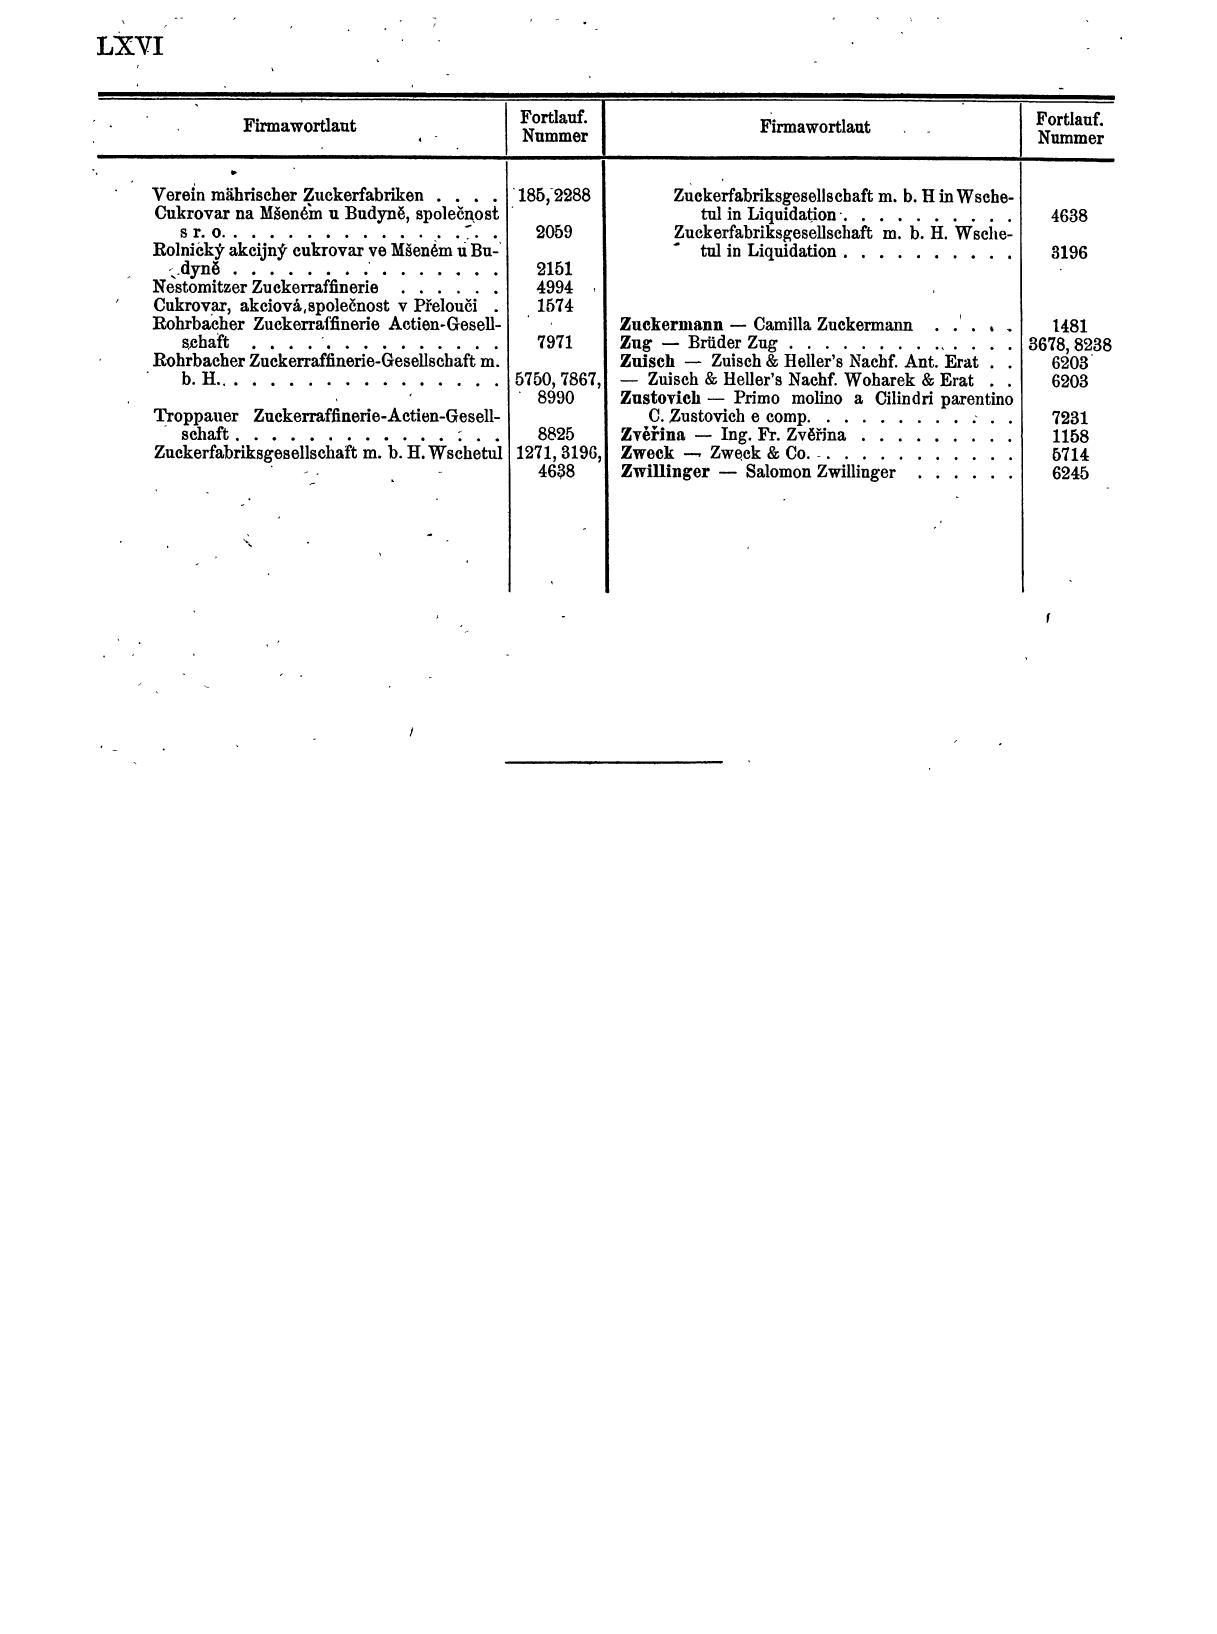 Zentralblatt für die Eintragungen in das Handelsregister 1913, Teil 1 - Seite 74